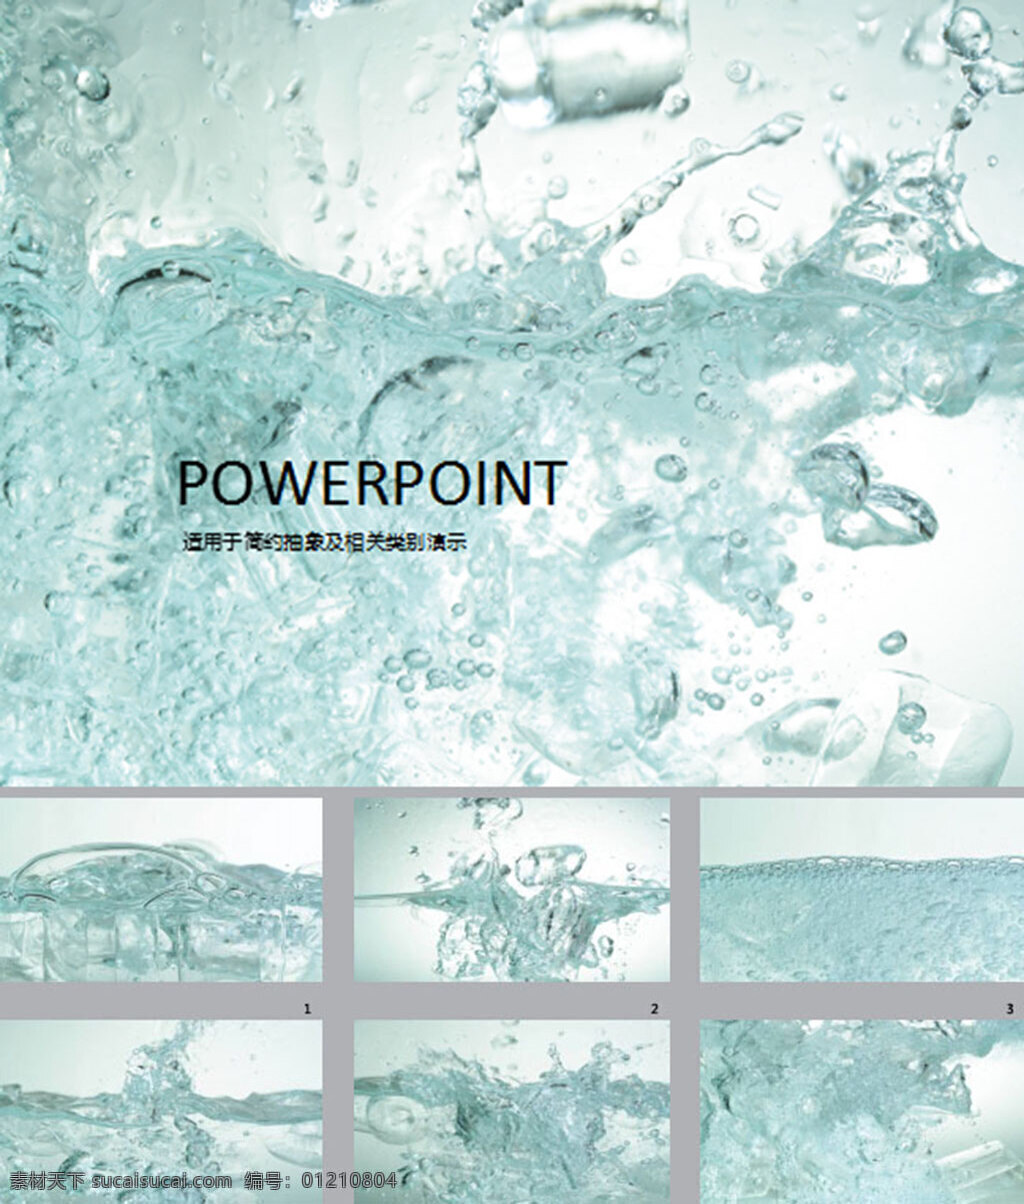 水资源 环保 能源 背景 能源生活 背景图片 模板 2016 动态 pptx 白色